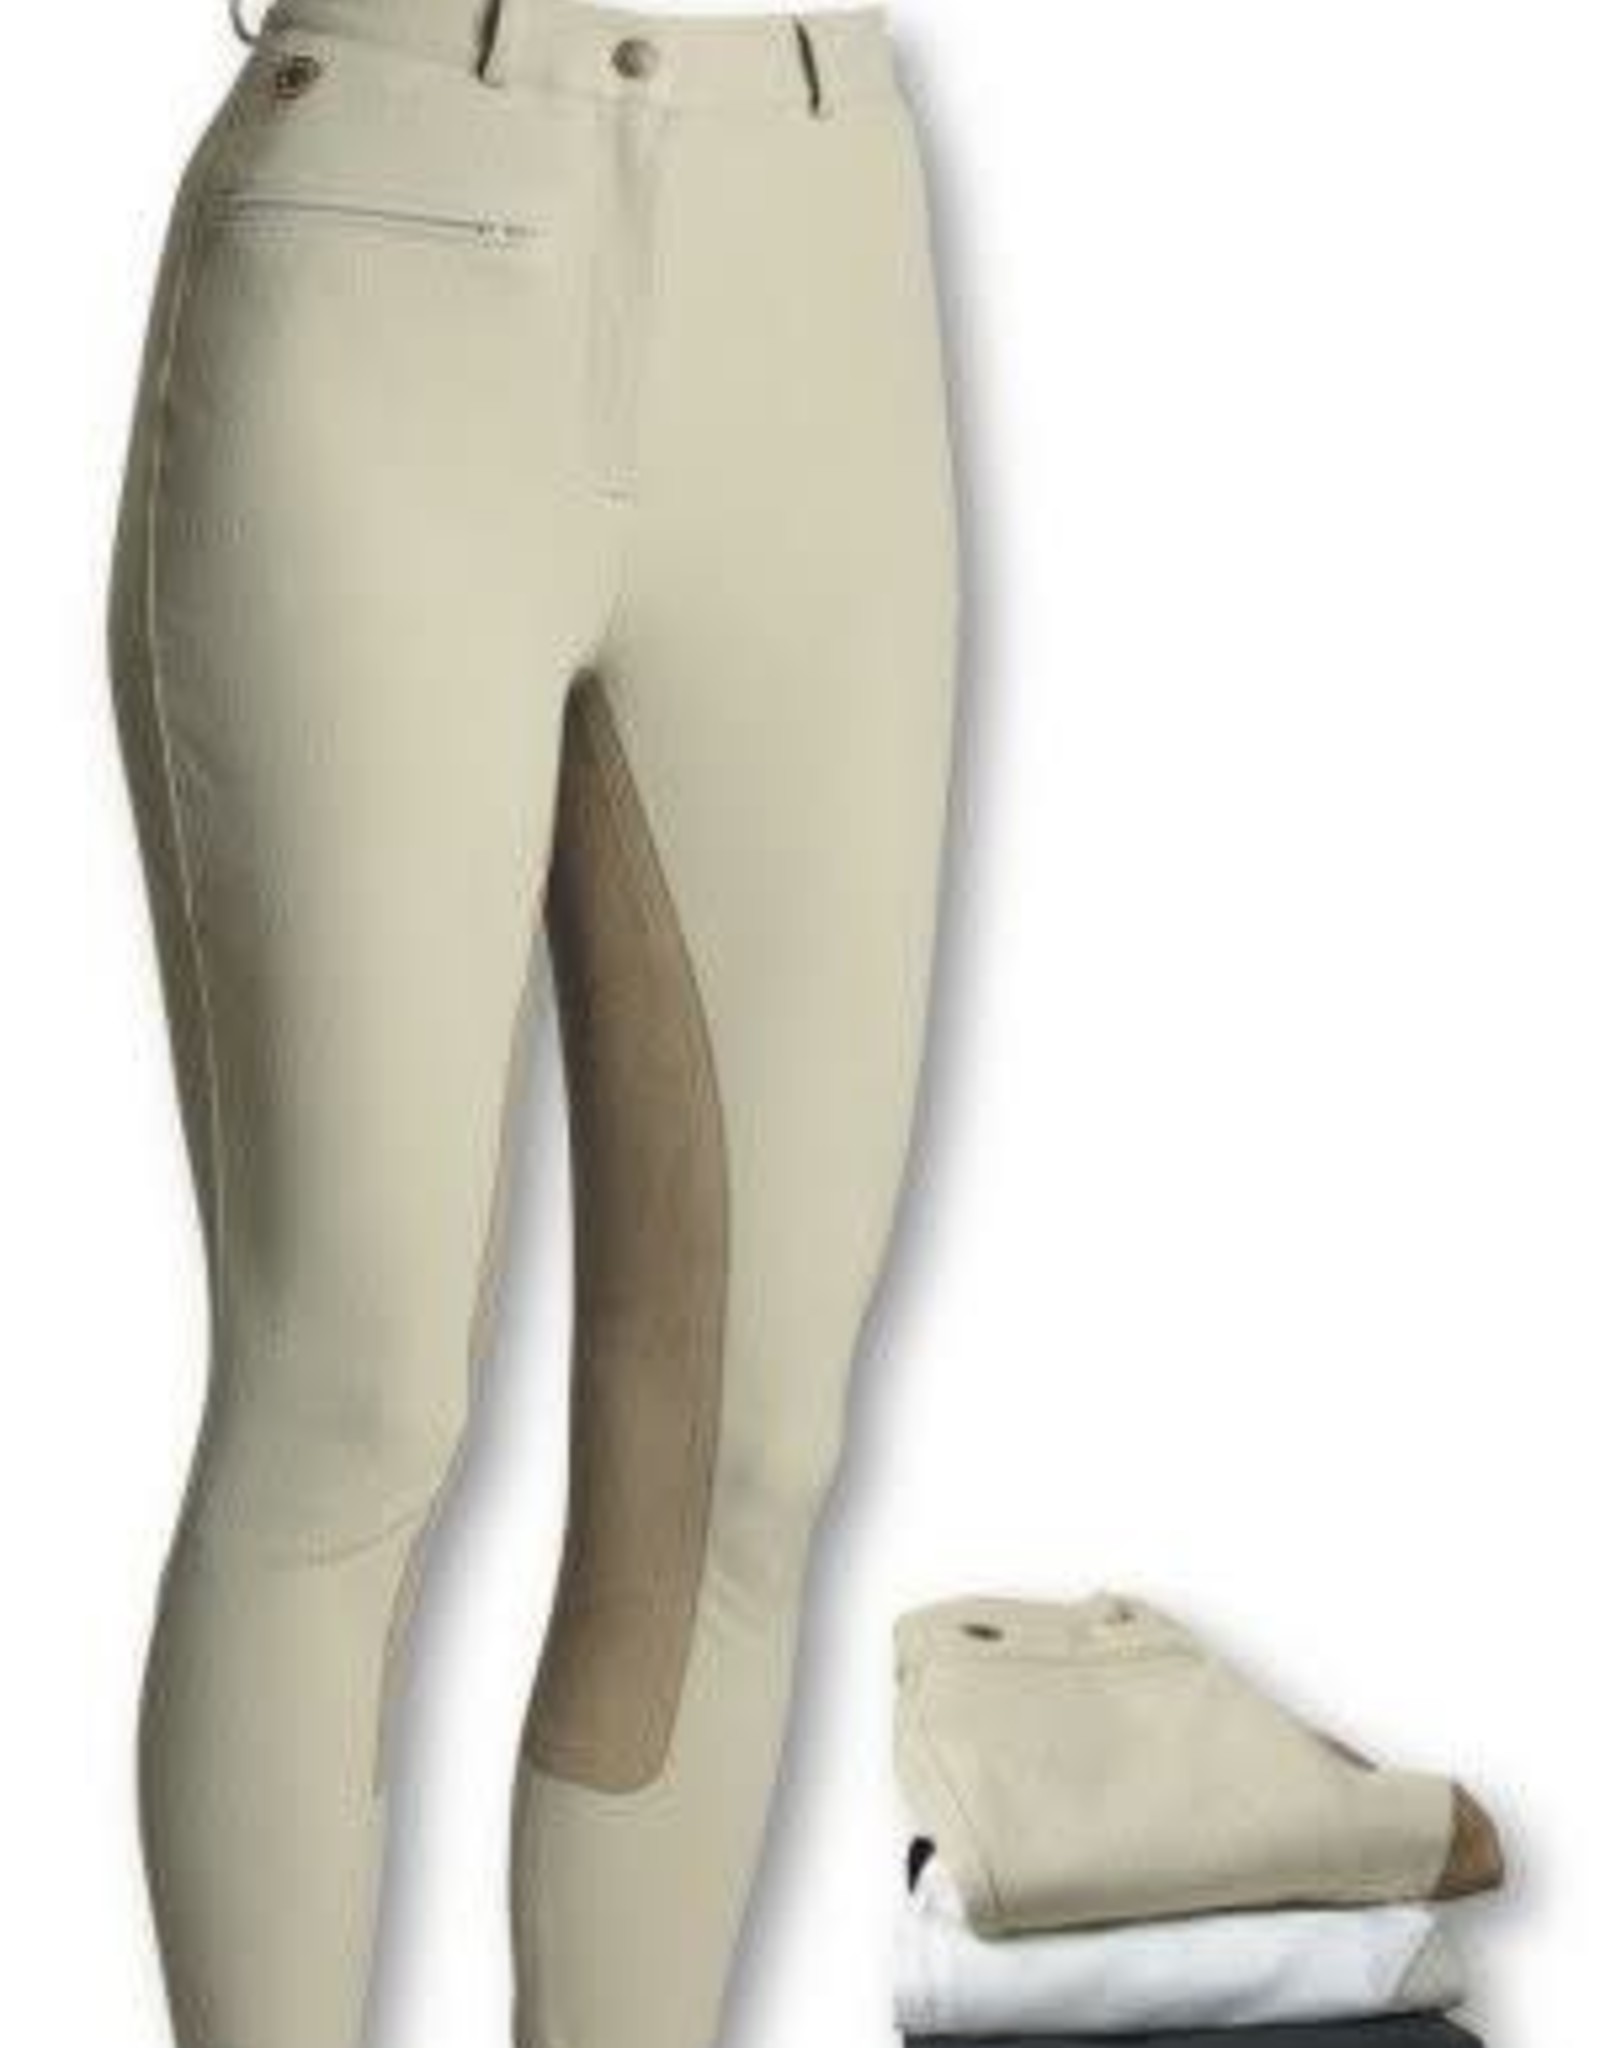 Ariat Ariat Sport Rhythm Breeches - White - Size 32 Regular